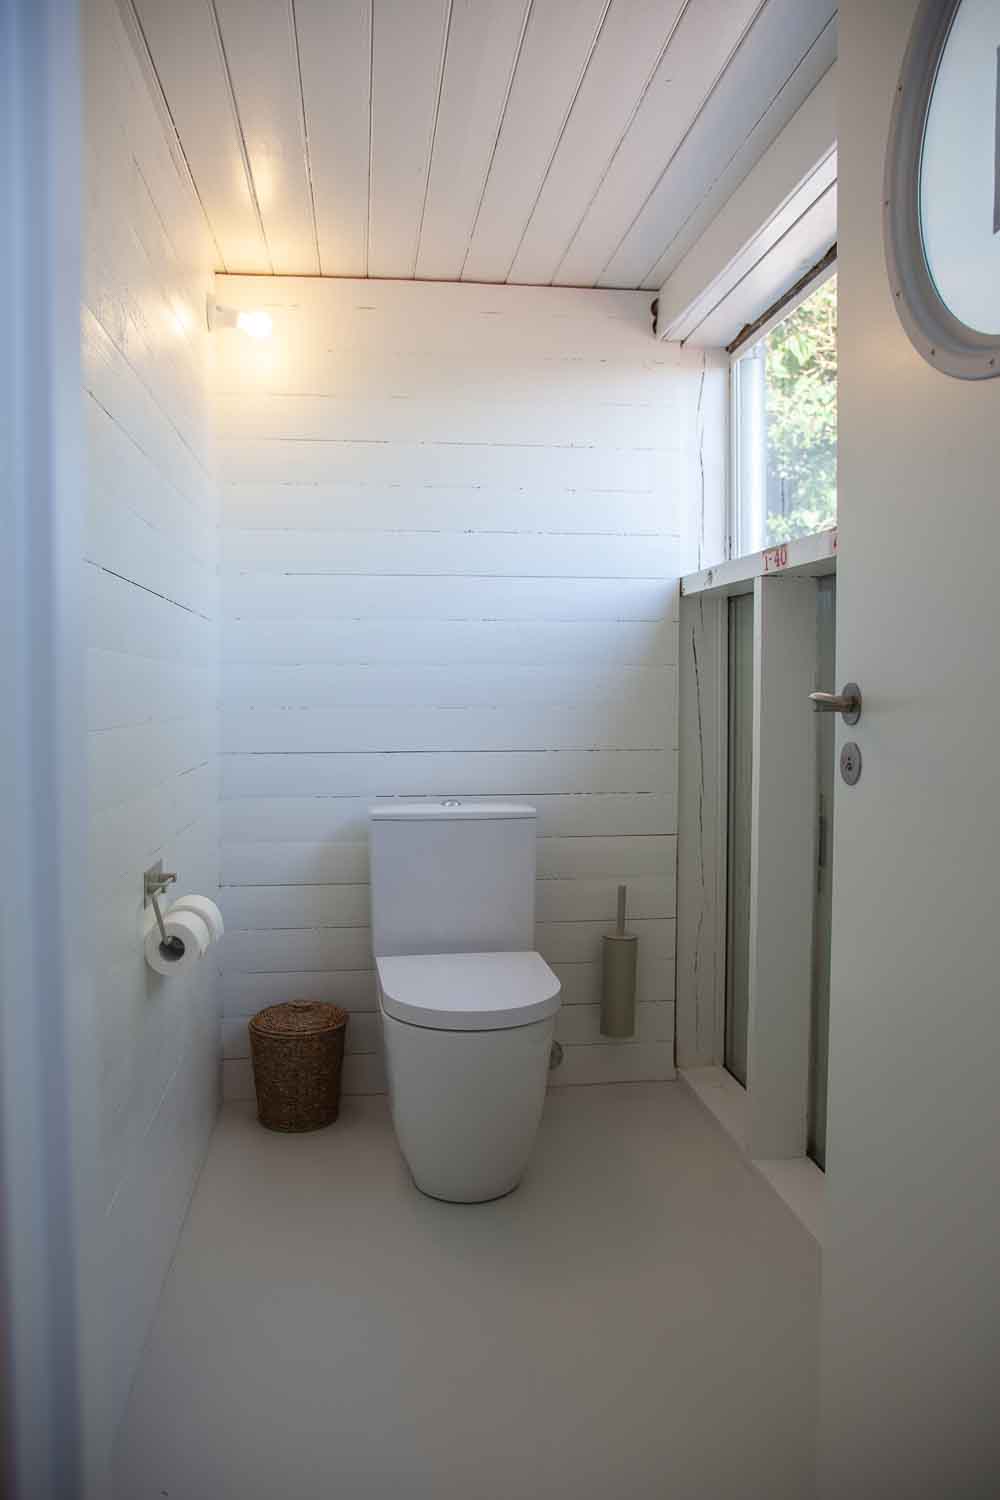 Modernen Komfort bringen Toiletten von Duravit. Die Auftraggeberin wählte sie zusammen mit dem Architekten aus.